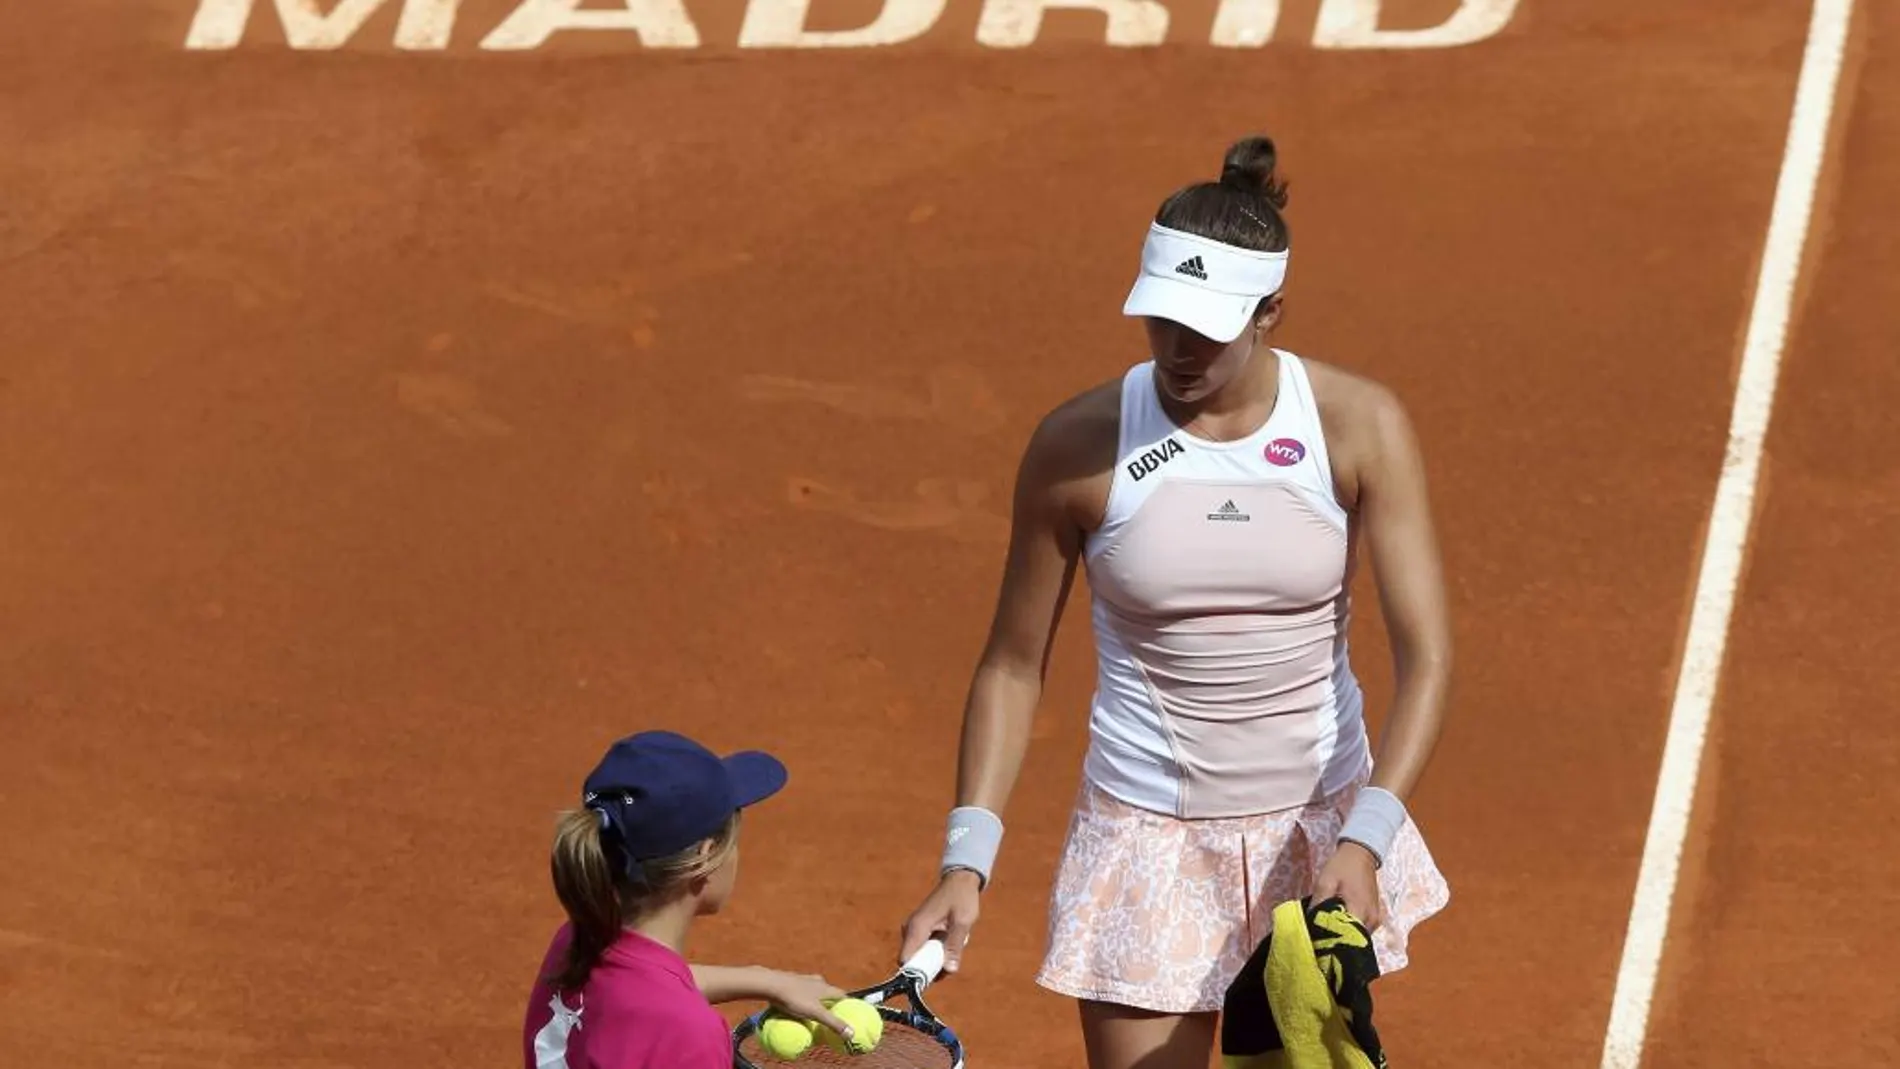 La tenista española Garbiñe Muguruza perdió ante Kuznetsova por 6-3, 5-7 y 7-5